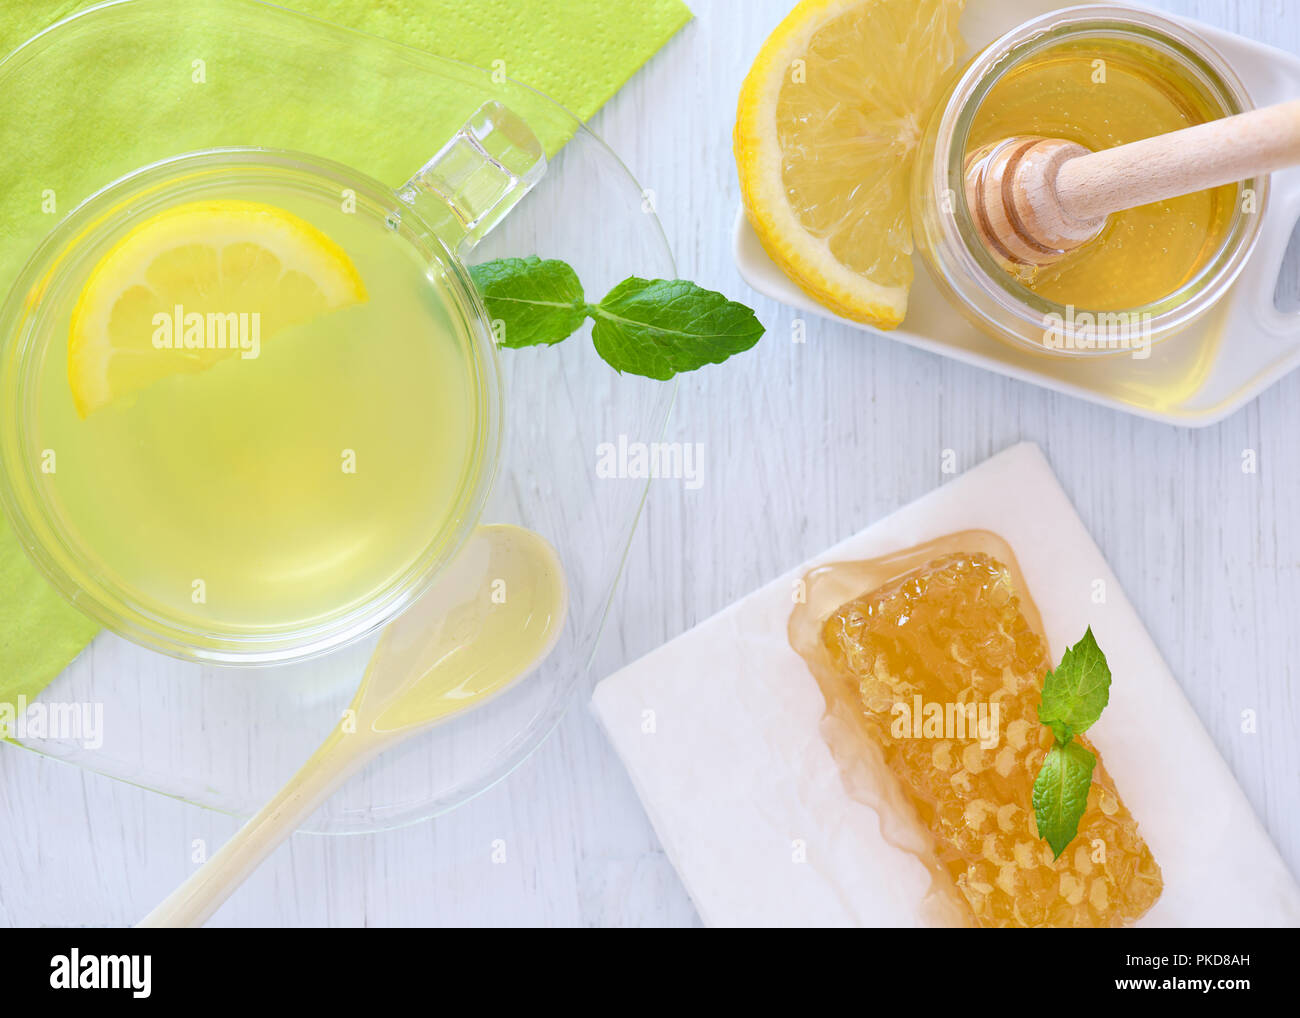 Plus colorés head shot de miel et citron boisson chaude montrant le miel-cone, fond bleu tranche de citron et de menthe fraîche copyspace Banque D'Images